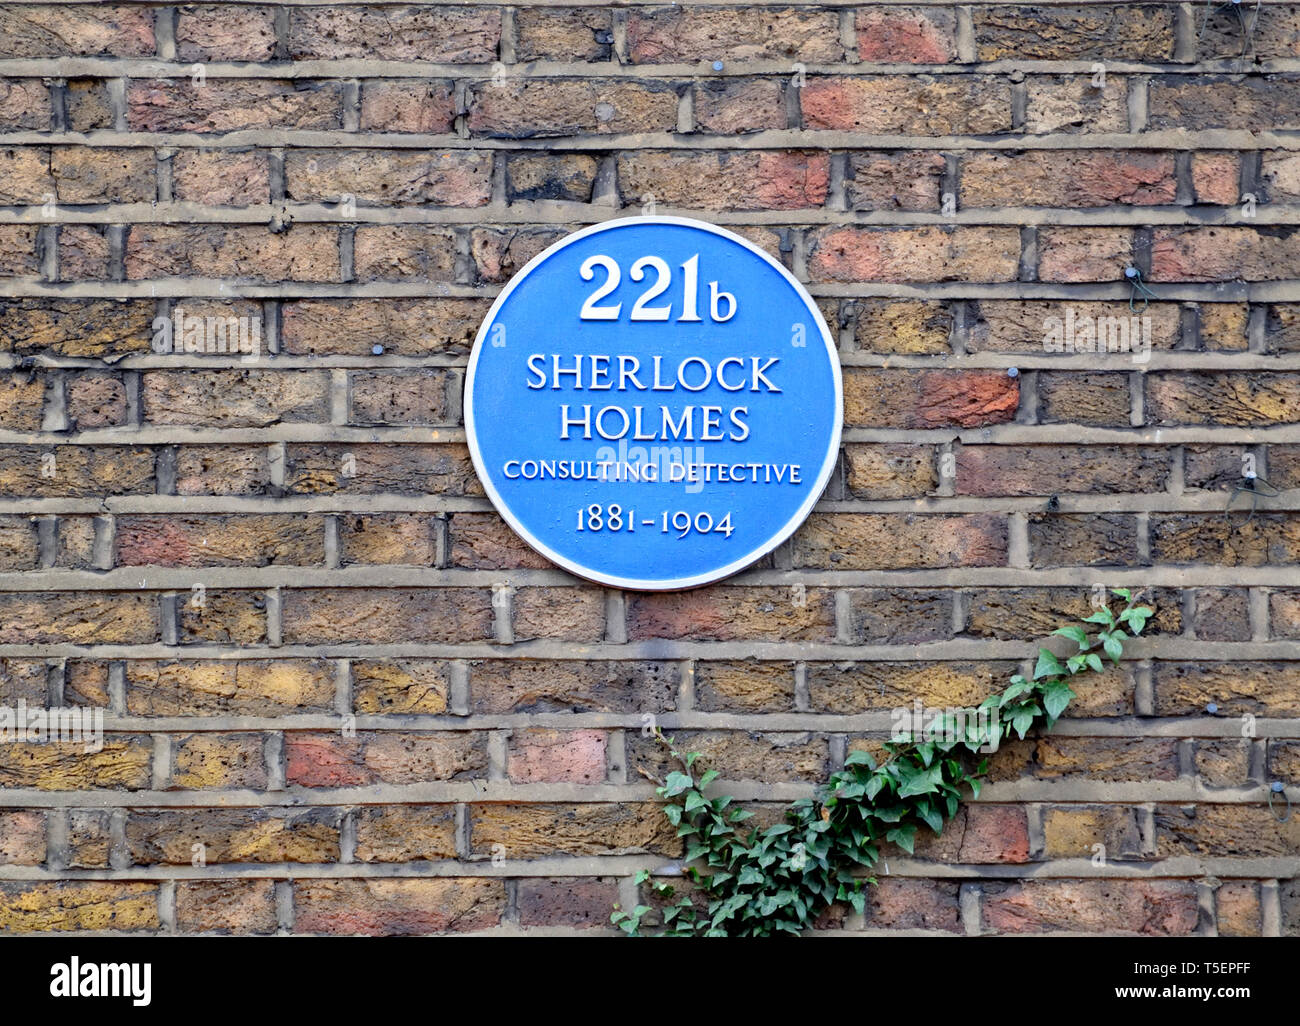 Londra, Inghilterra, Regno Unito. Blu Commemorative Plaque: 221b Sherlock Holmes consulting detective il 1881-1904 (carattere fictional) 221b di Baker Street Foto Stock